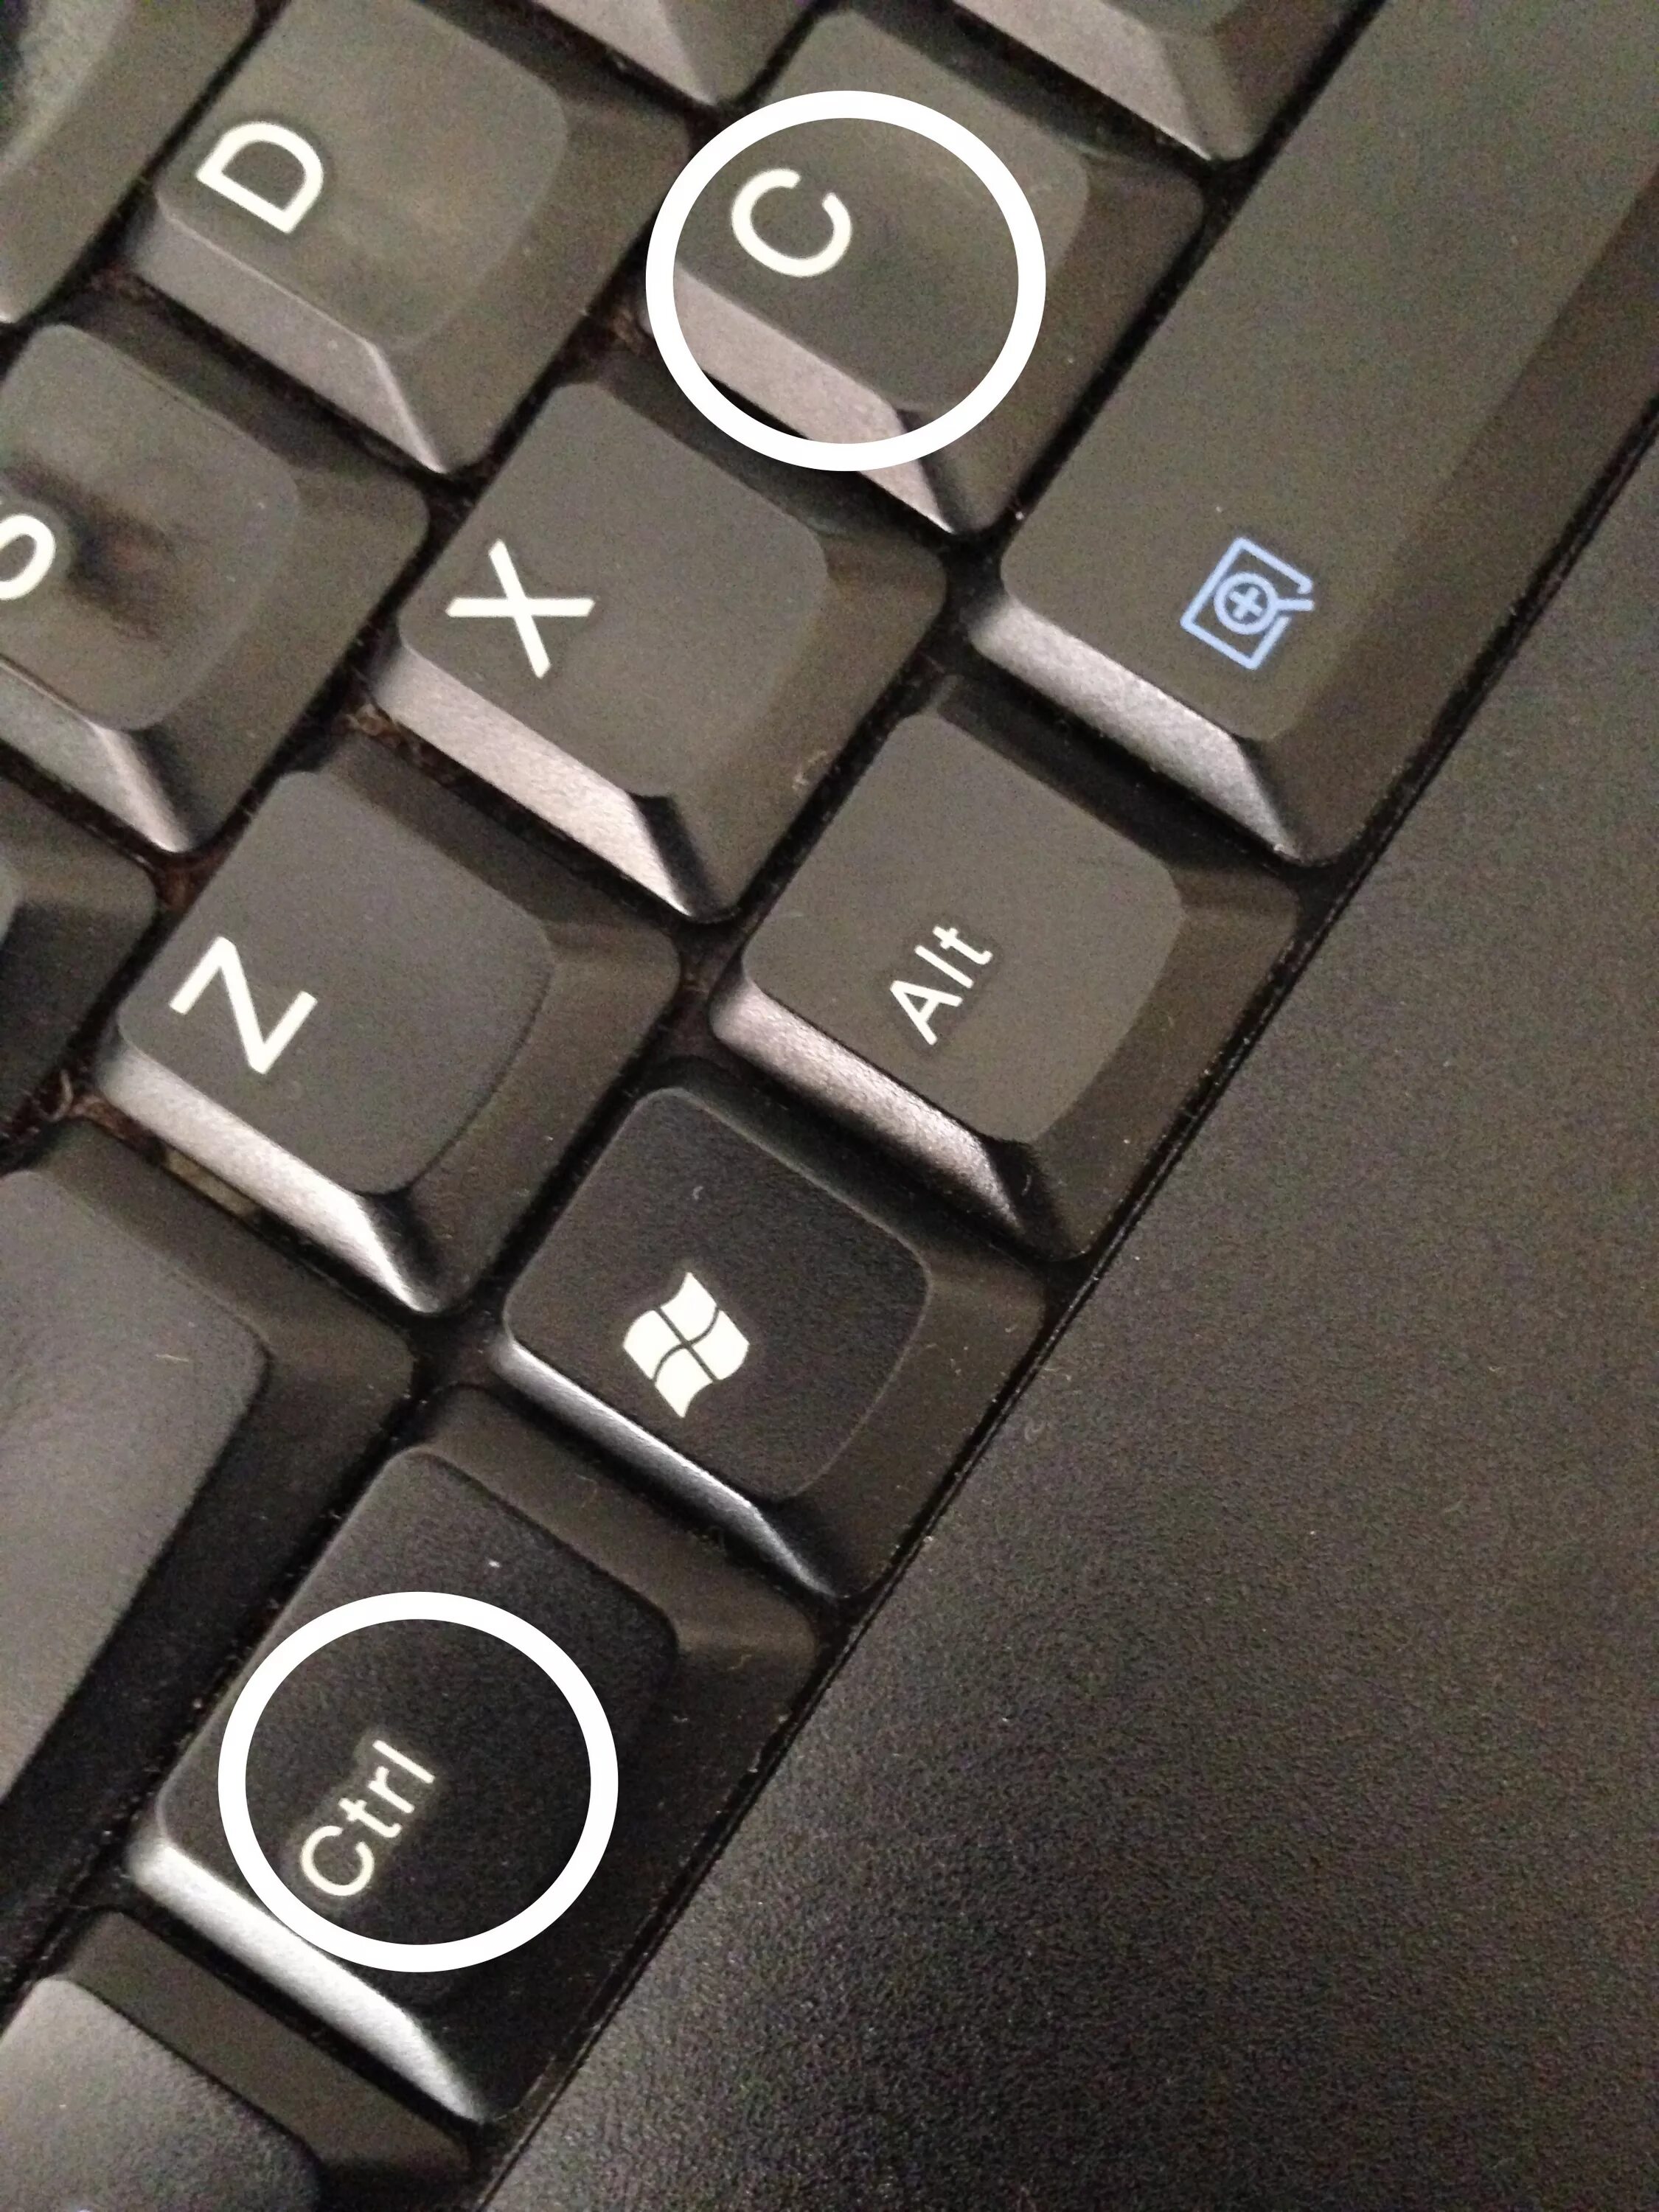 Control клавиша. Кнопка шифт на клавиатуре. Клавиатура кнопки. Кнопки ноутбука. Контроль кнопка на клавиатуре.